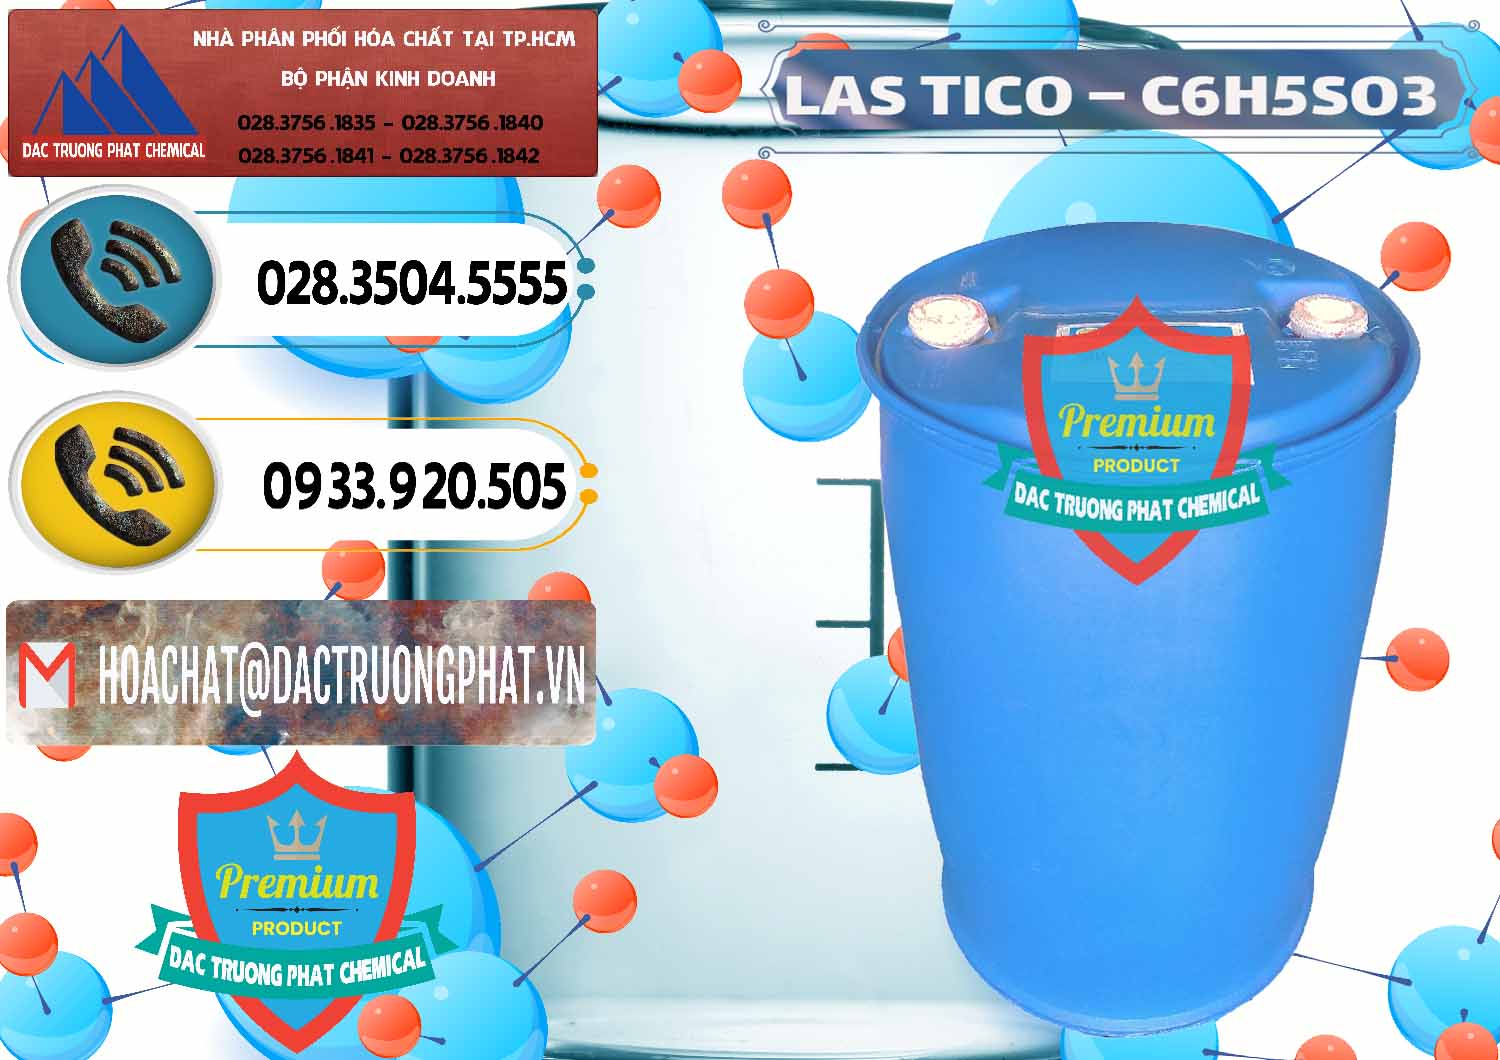 Đơn vị bán _ cung cấp Chất tạo bọt Las H Tico Việt Nam - 0190 - Cty chuyên phân phối & bán hóa chất tại TP.HCM - hoachatdetnhuom.vn